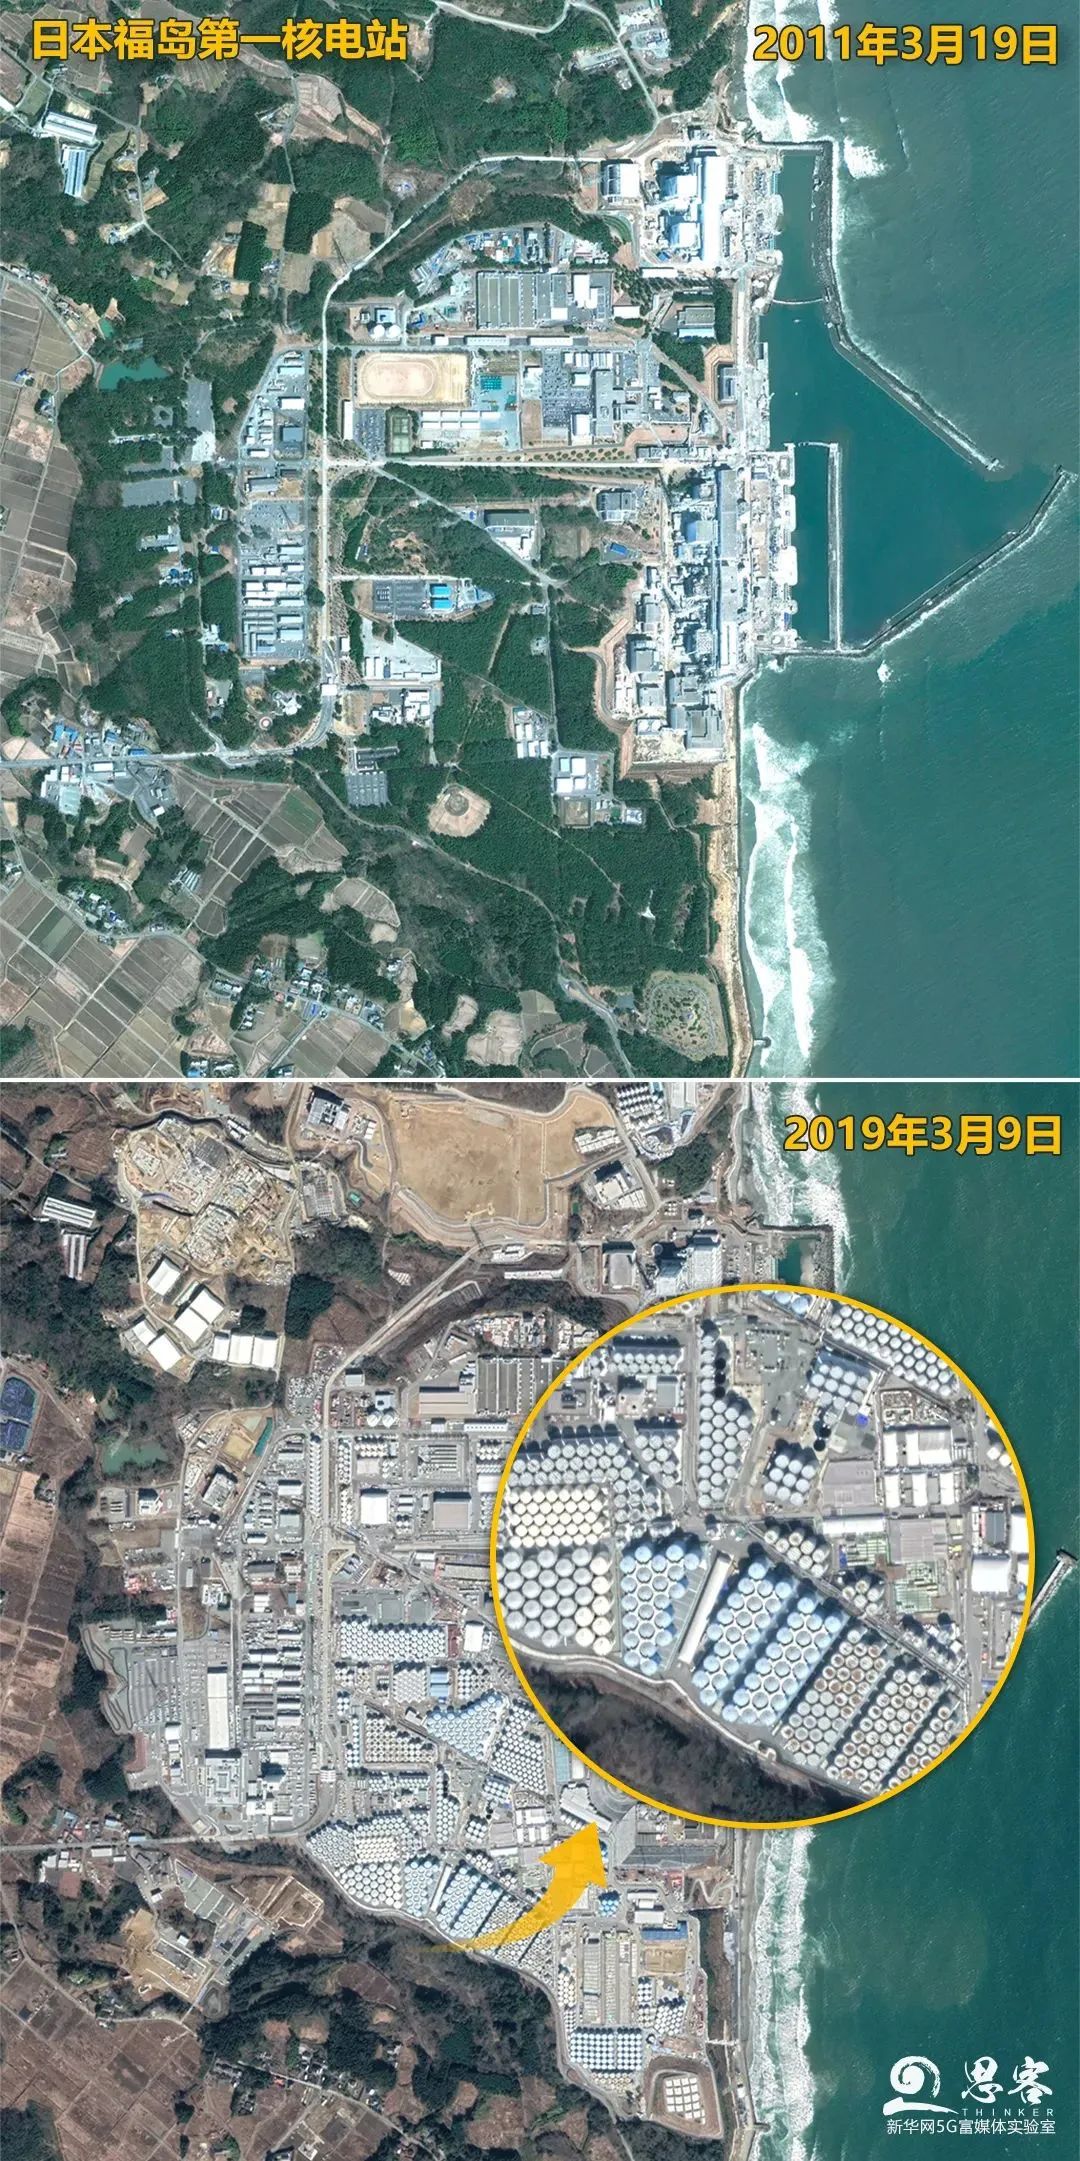 日本福岛第一核电站卫星照片